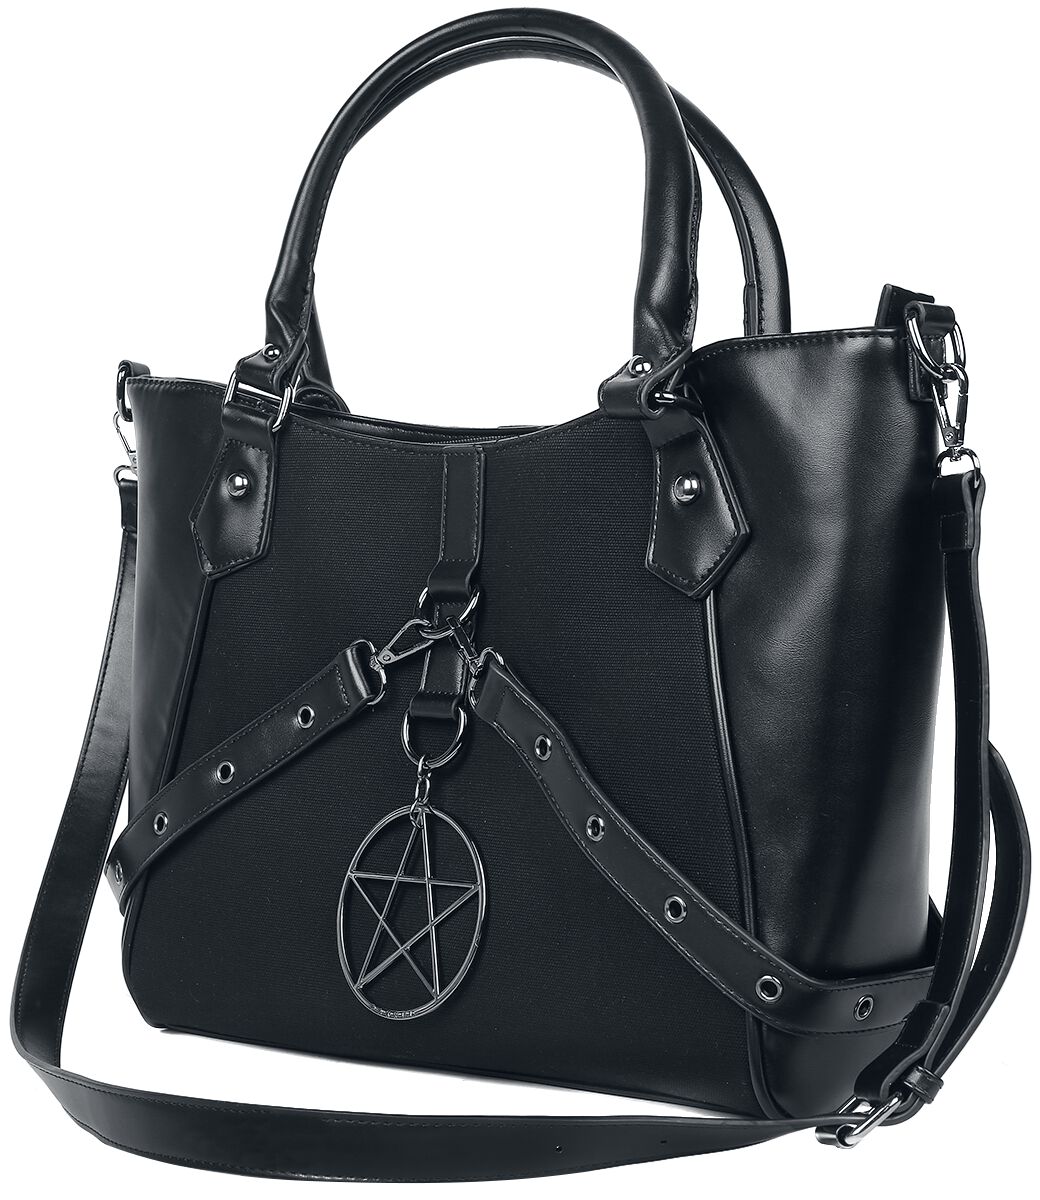 Banned Alternative - Gothic Handtasche - In Oblivion We Trust - für Damen - schwarz